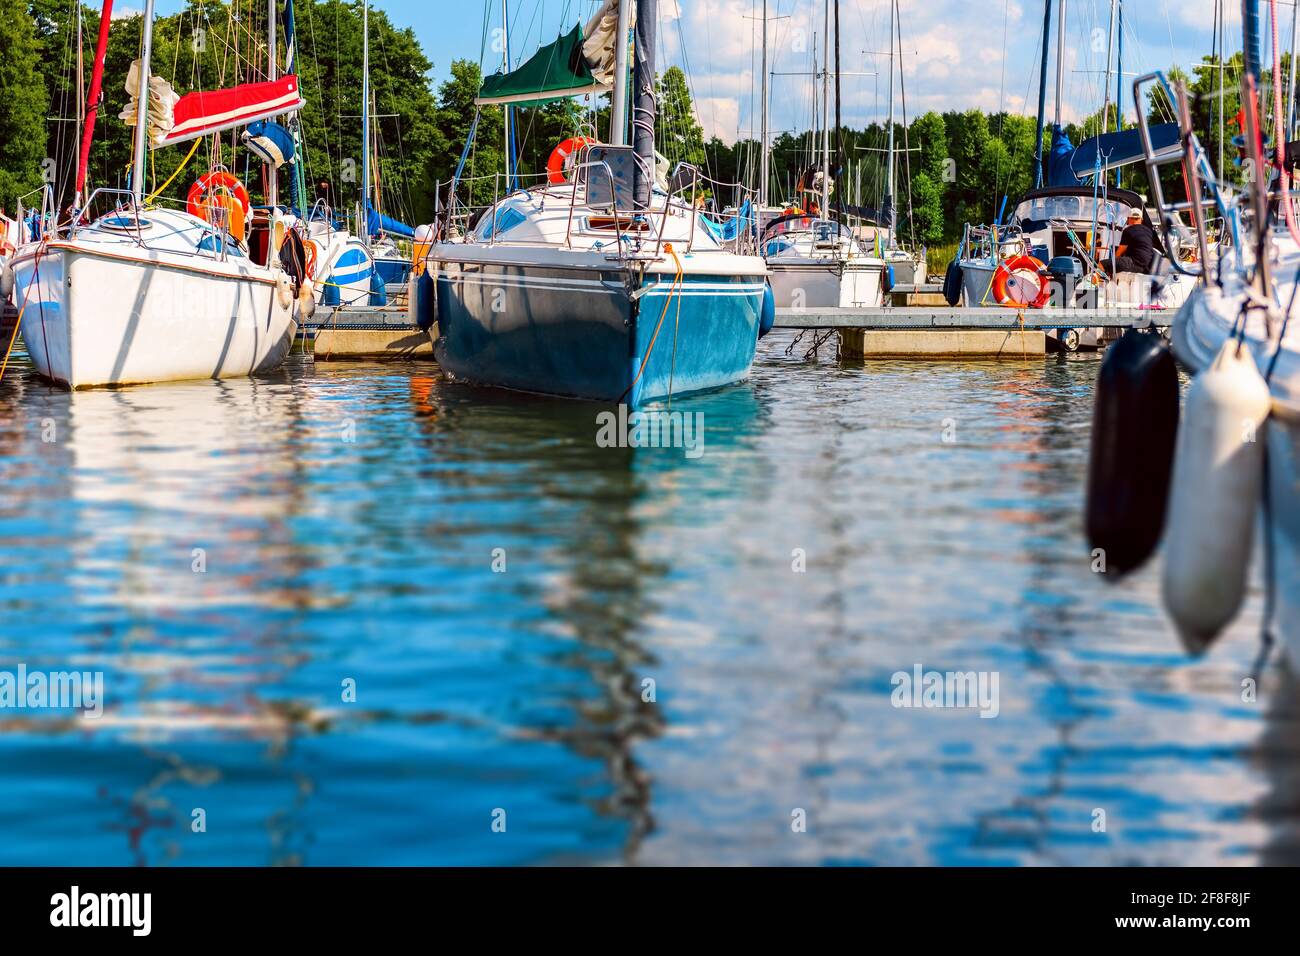 Yachts amarrés dans un port. Voiliers dans le quai. Vacances d'été, croisière, loisirs, sport, régate, loisirs, service, tourisme Banque D'Images